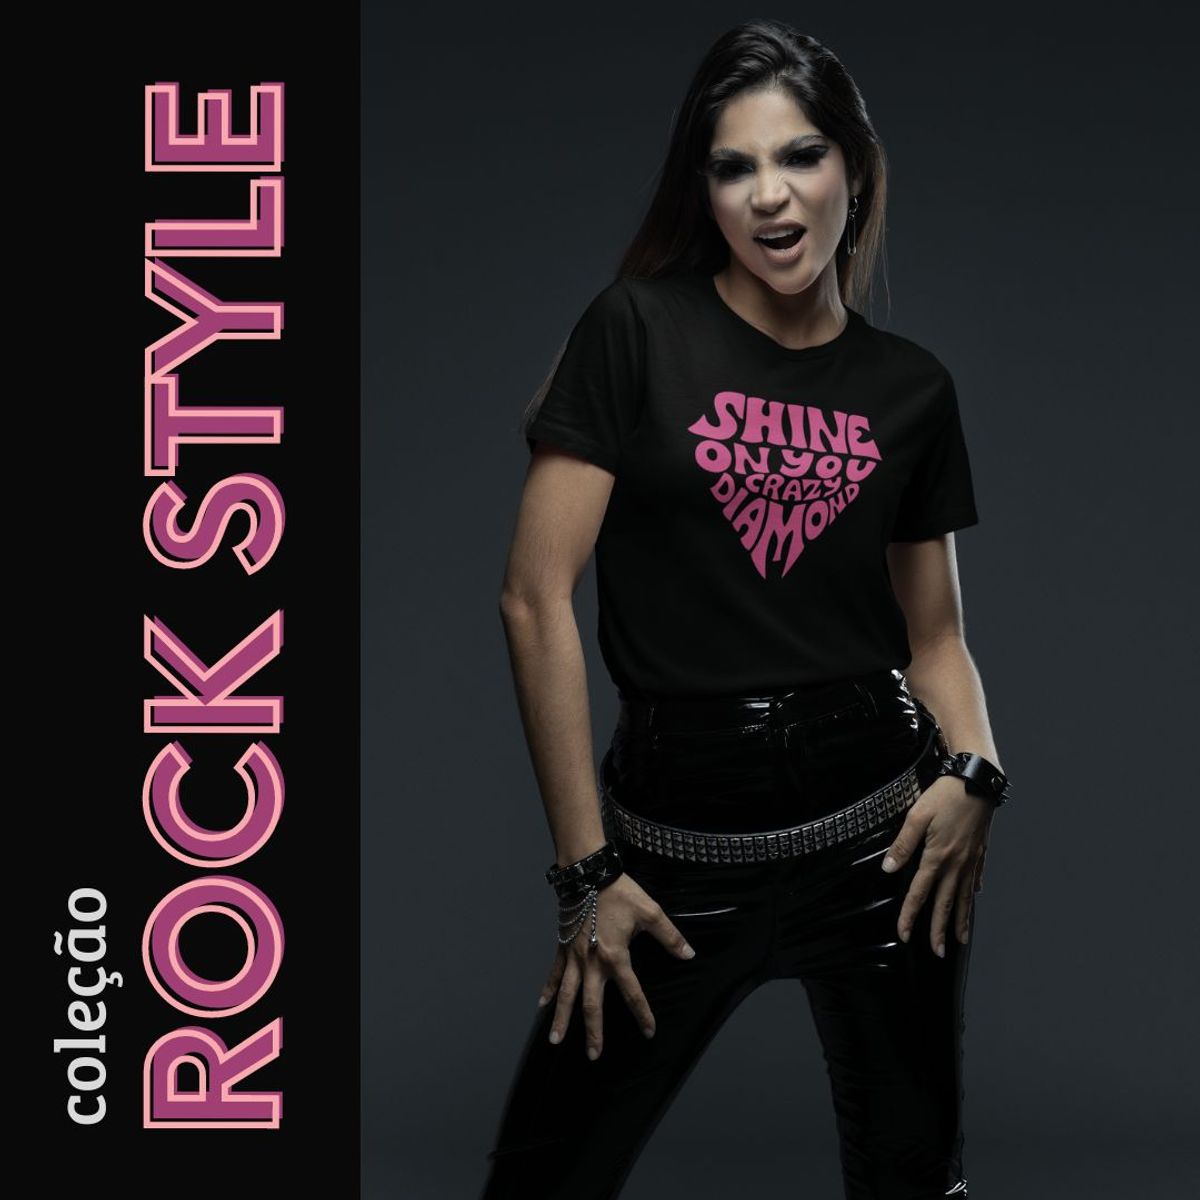 Nome do produto: Camiseta Rock Style Shine on You